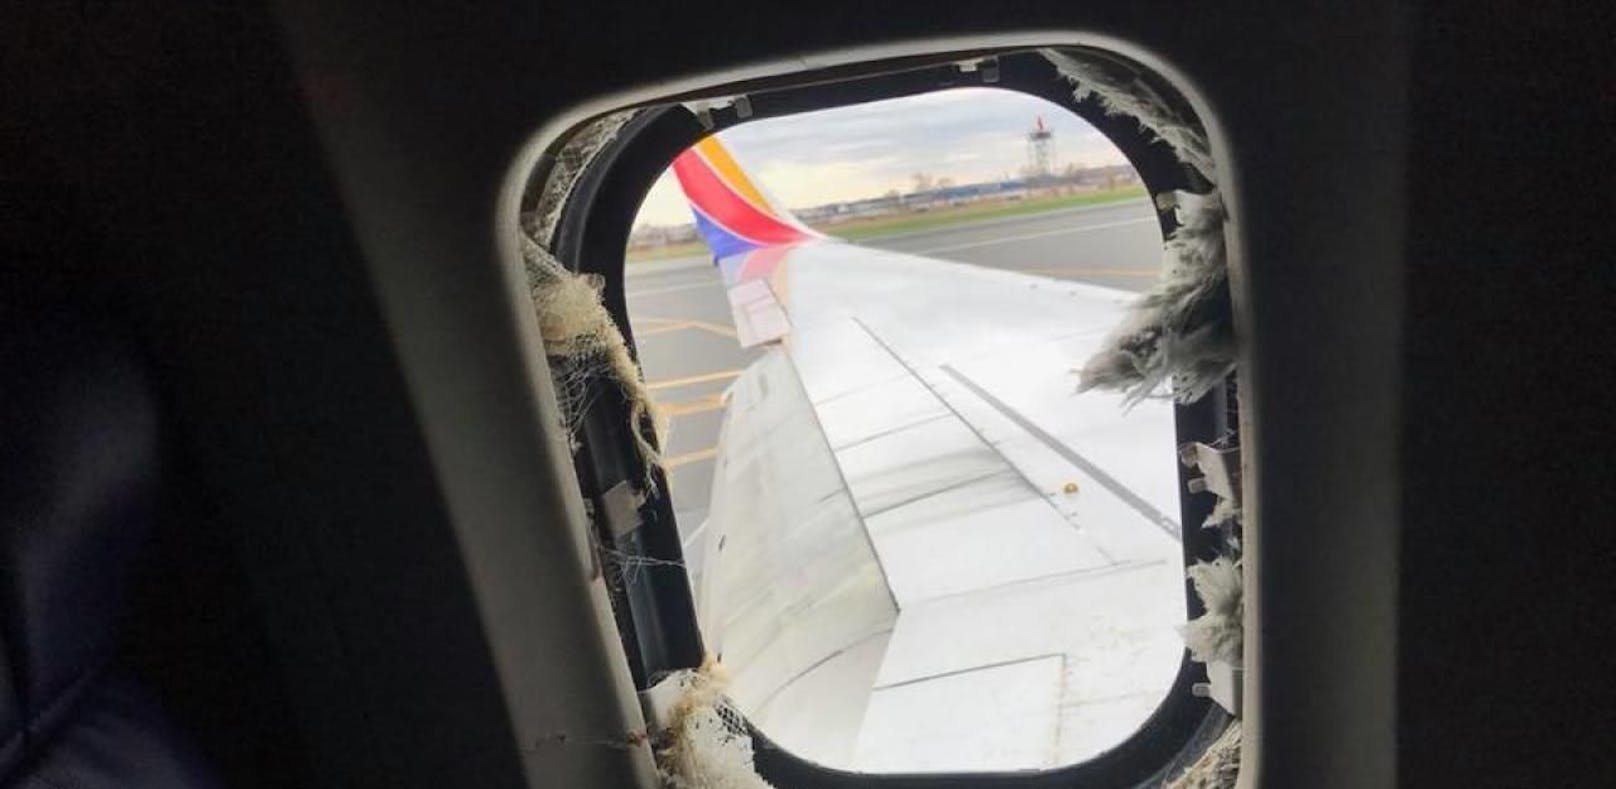 Triebwerk explodiert während Flug - Frau tot